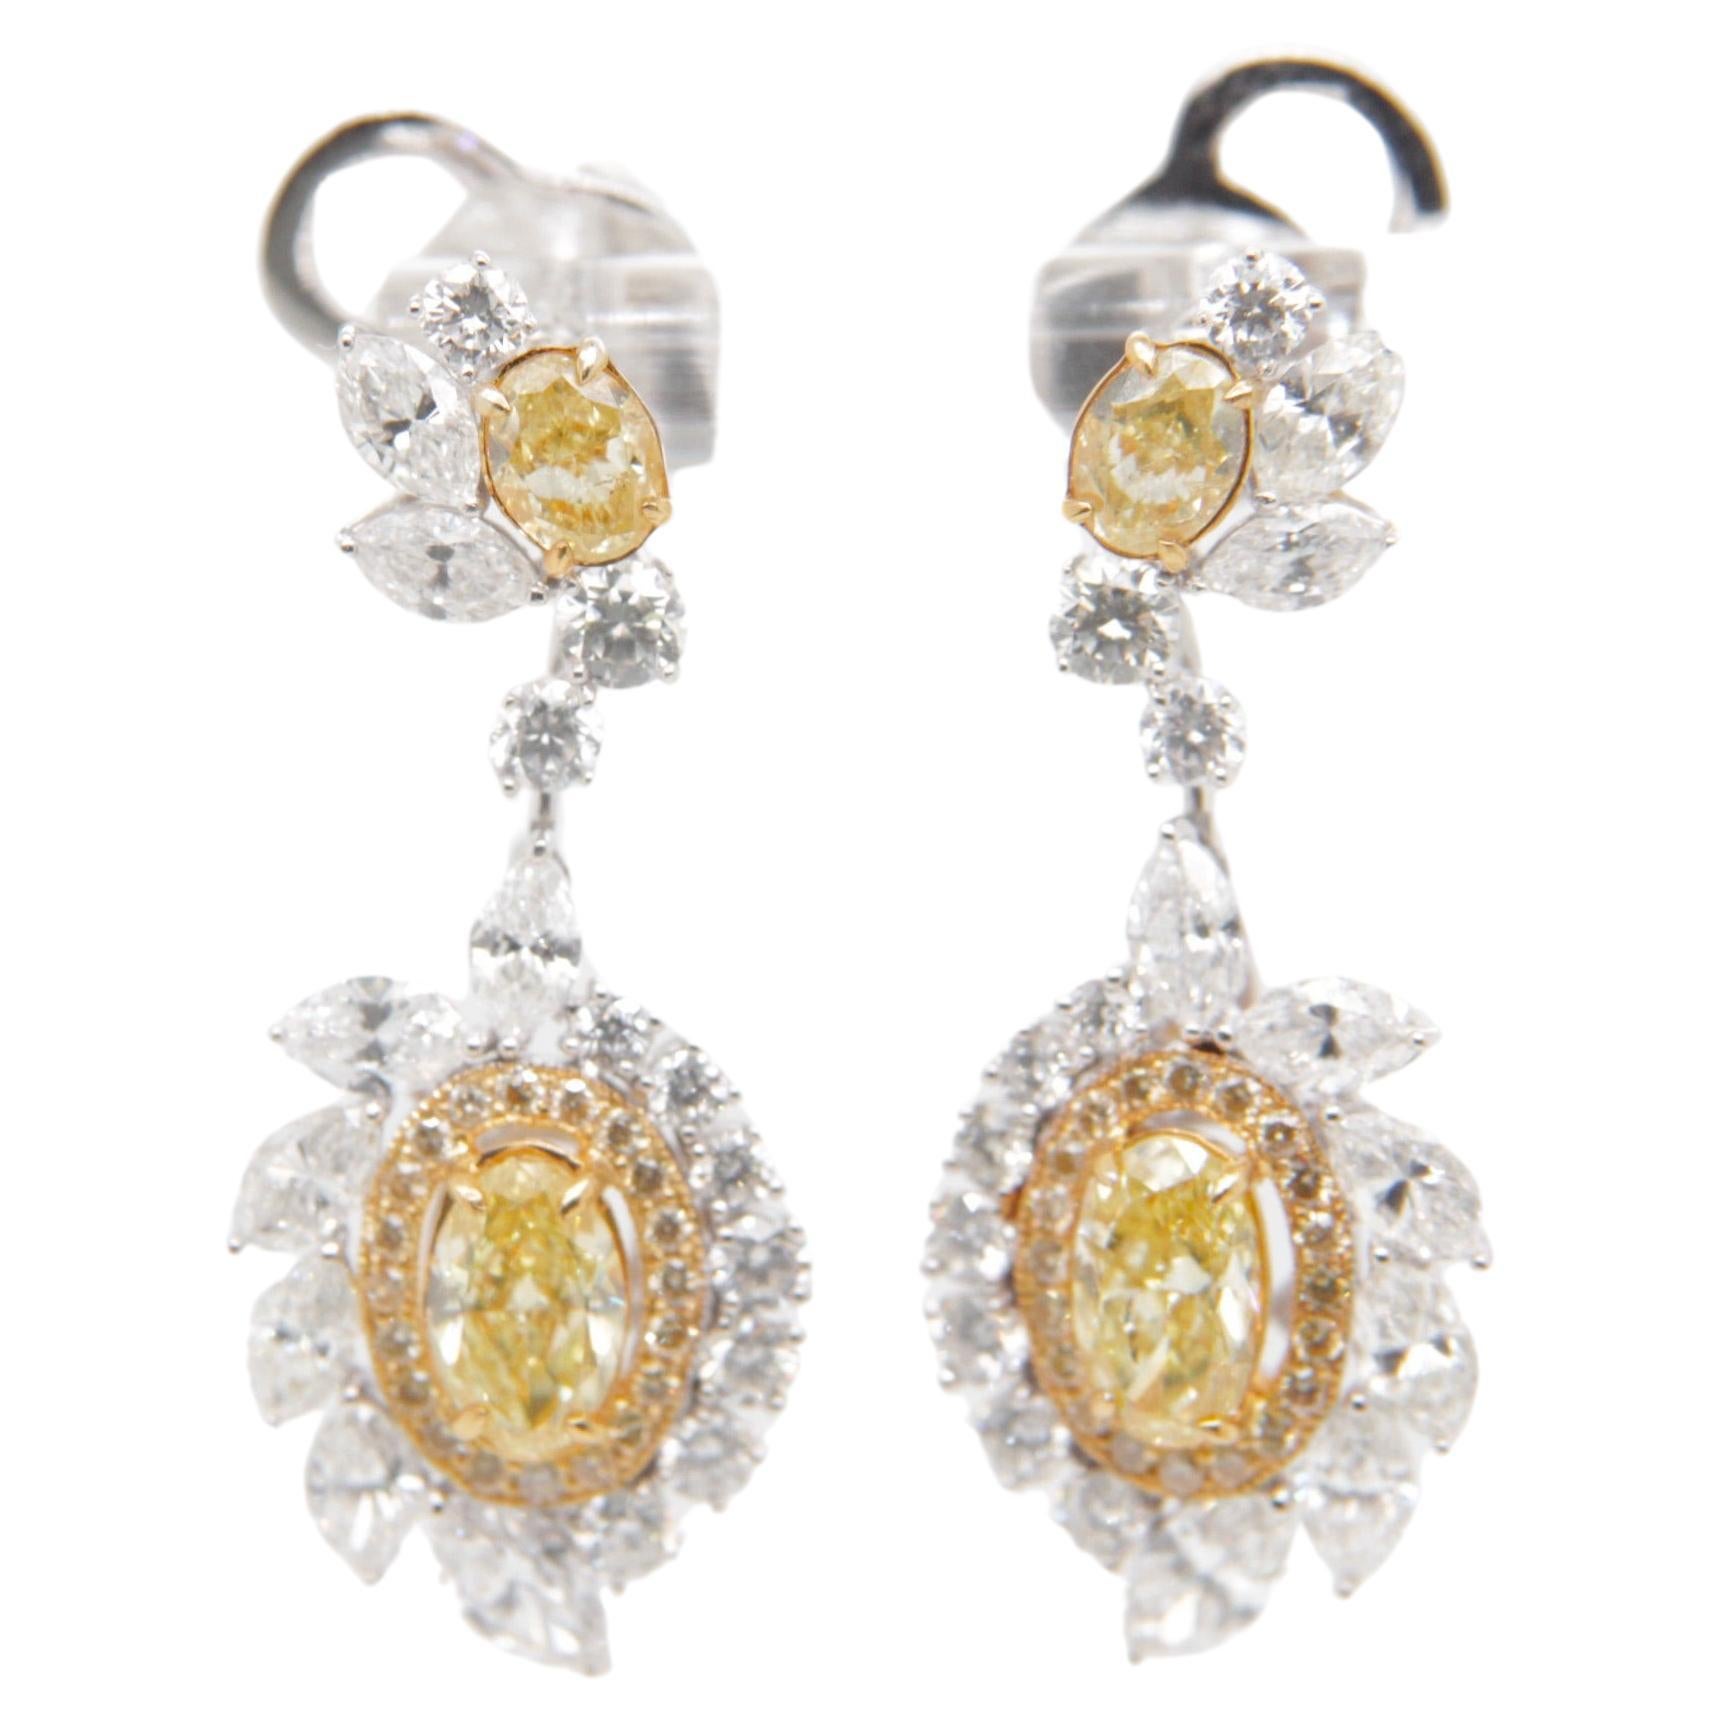 Rewa Jewellery Chandelier Earrings